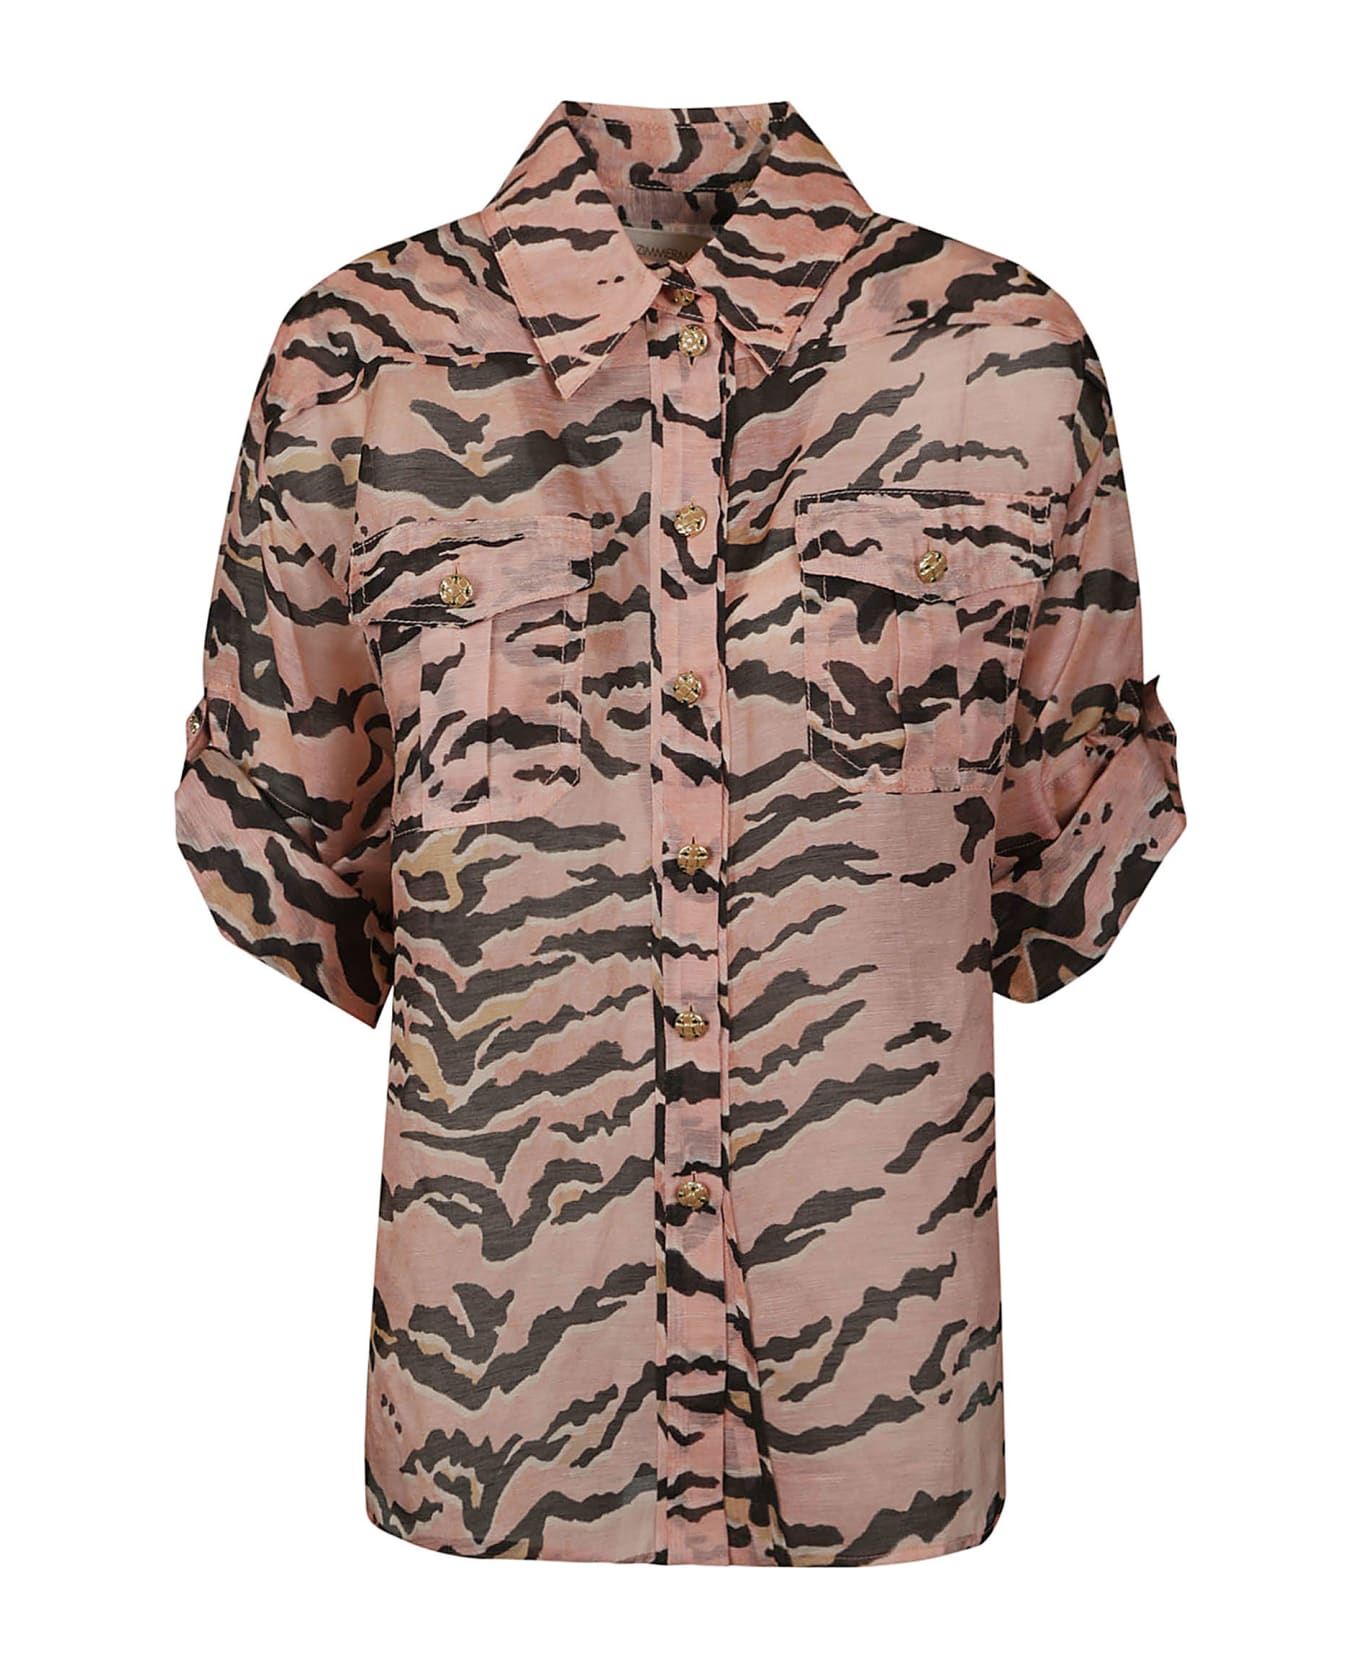 Zimmermann Matchmaker Safari Shirt - Pink/Brown